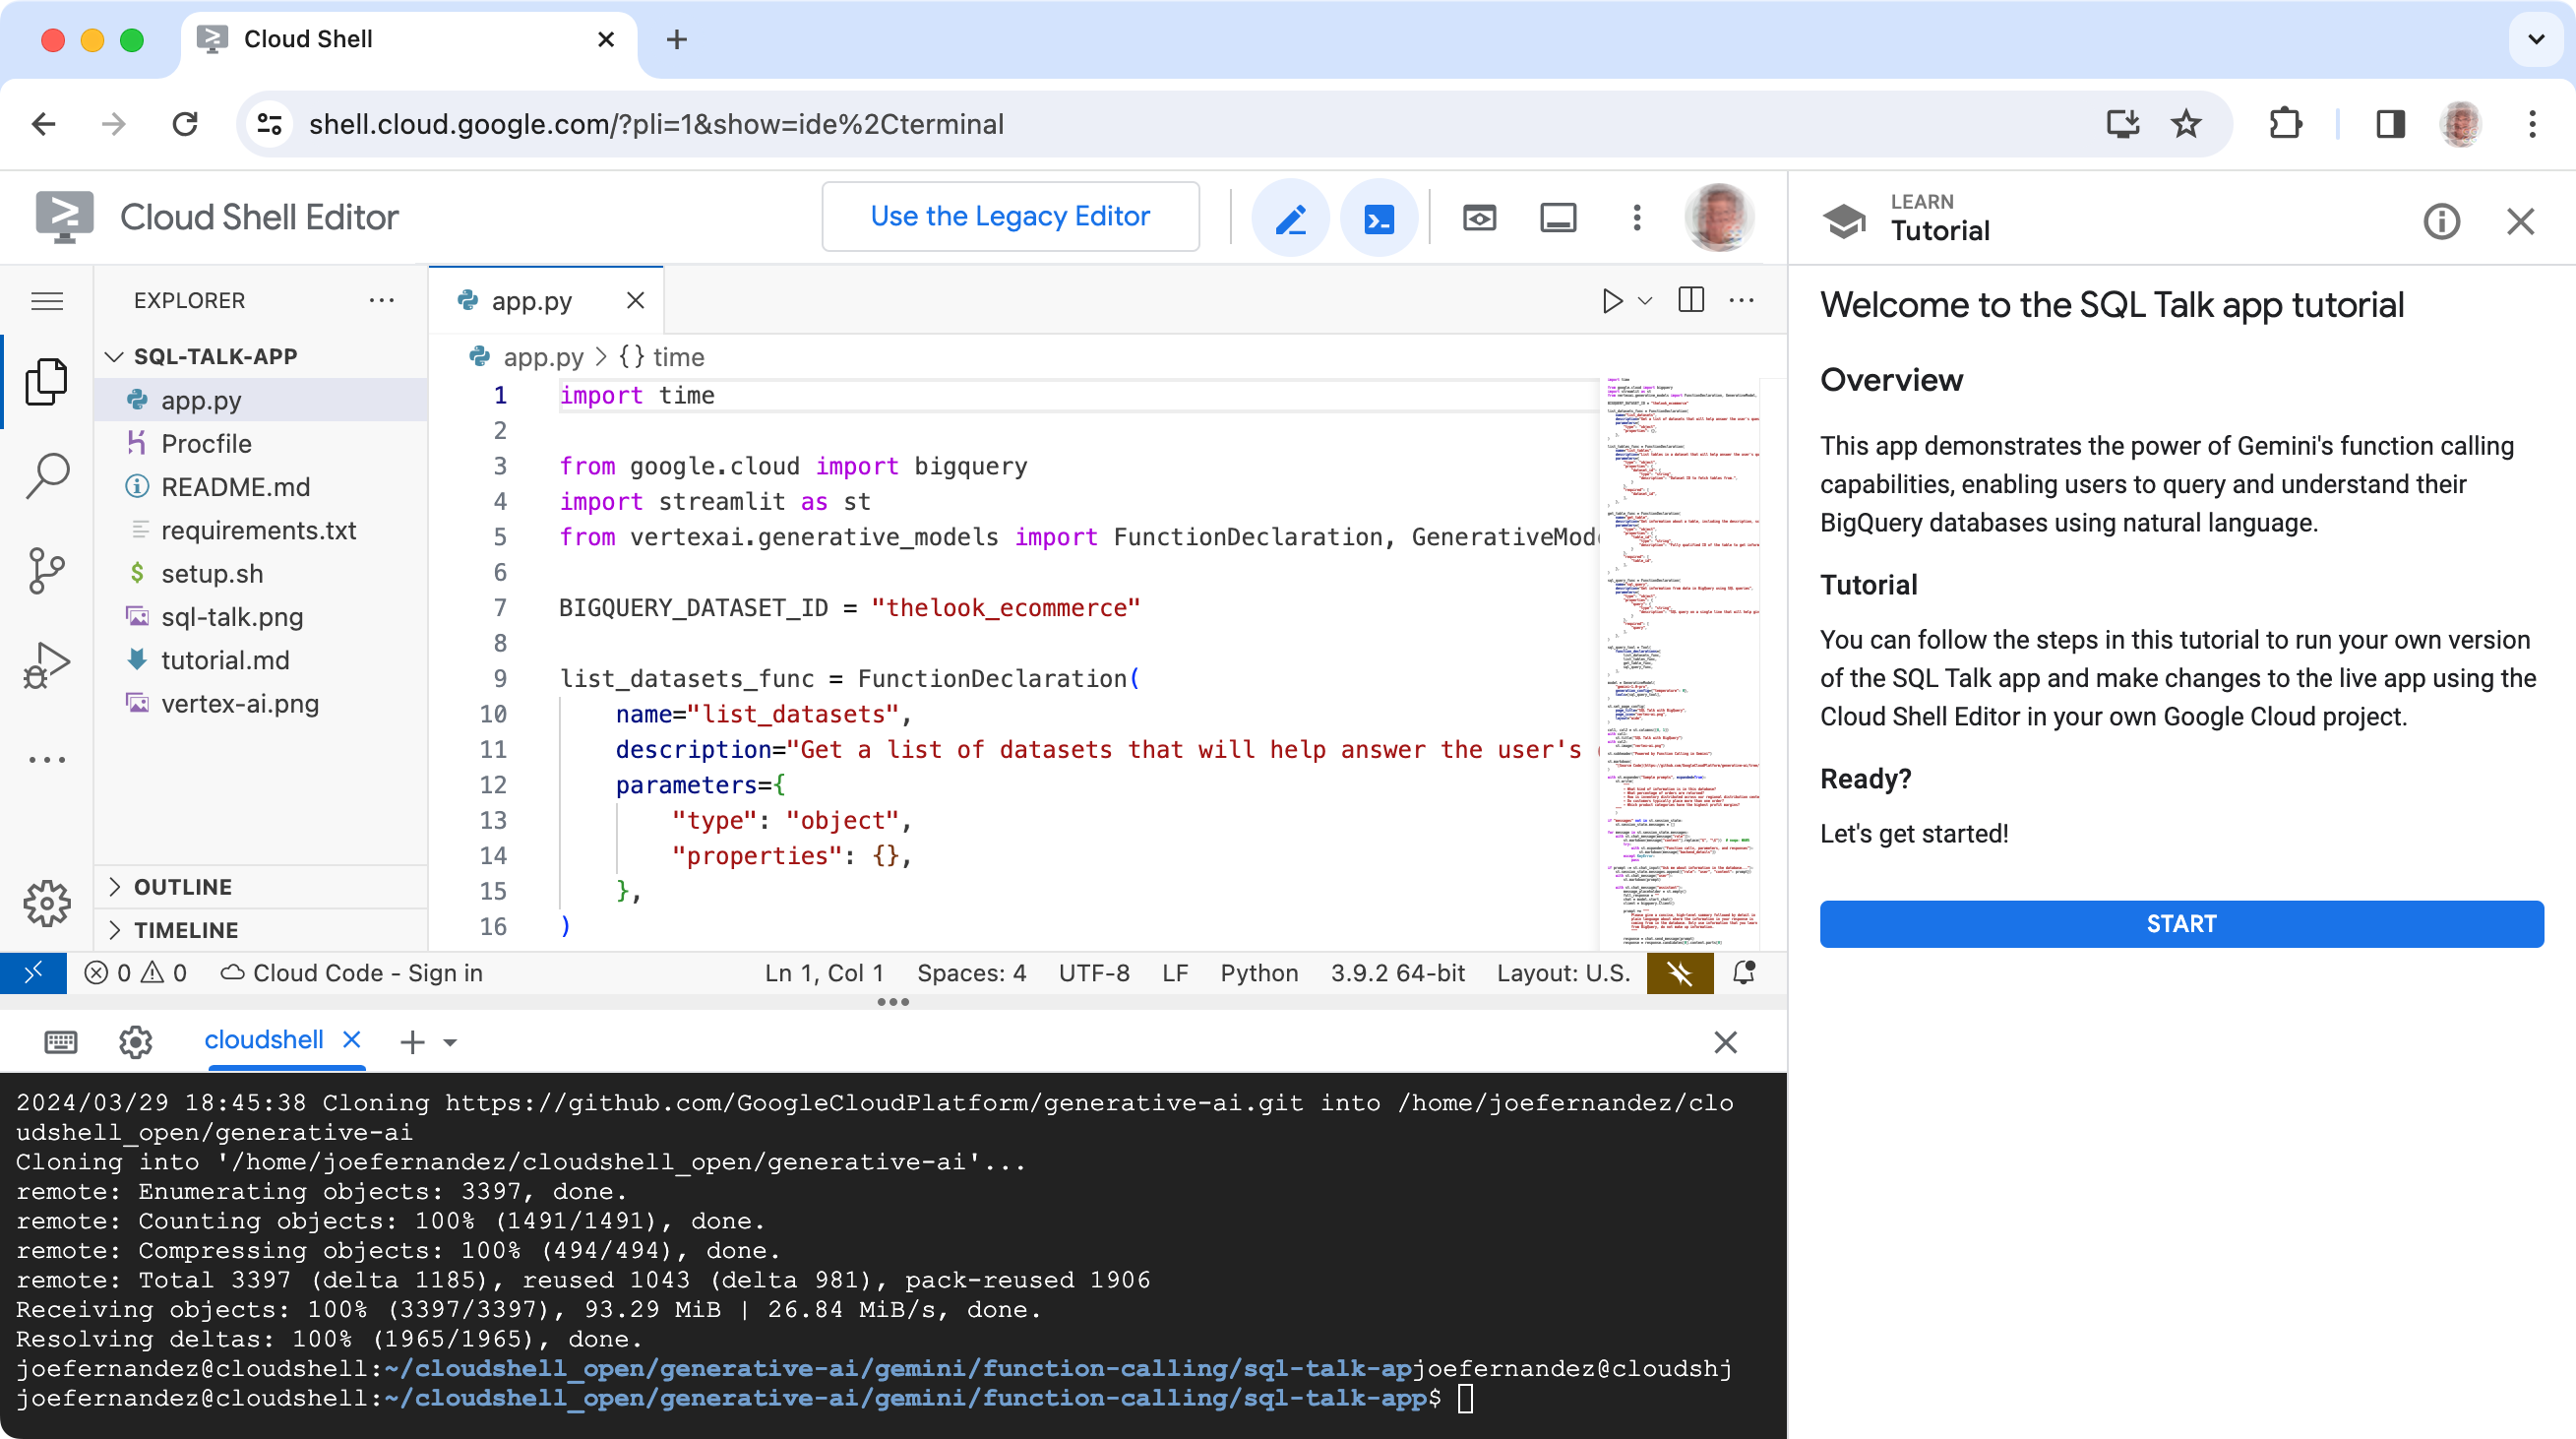 Google Cloud Shell Editor, जिसके साथ SQL Talk प्रोजेक्ट कोड दिखाया गया है